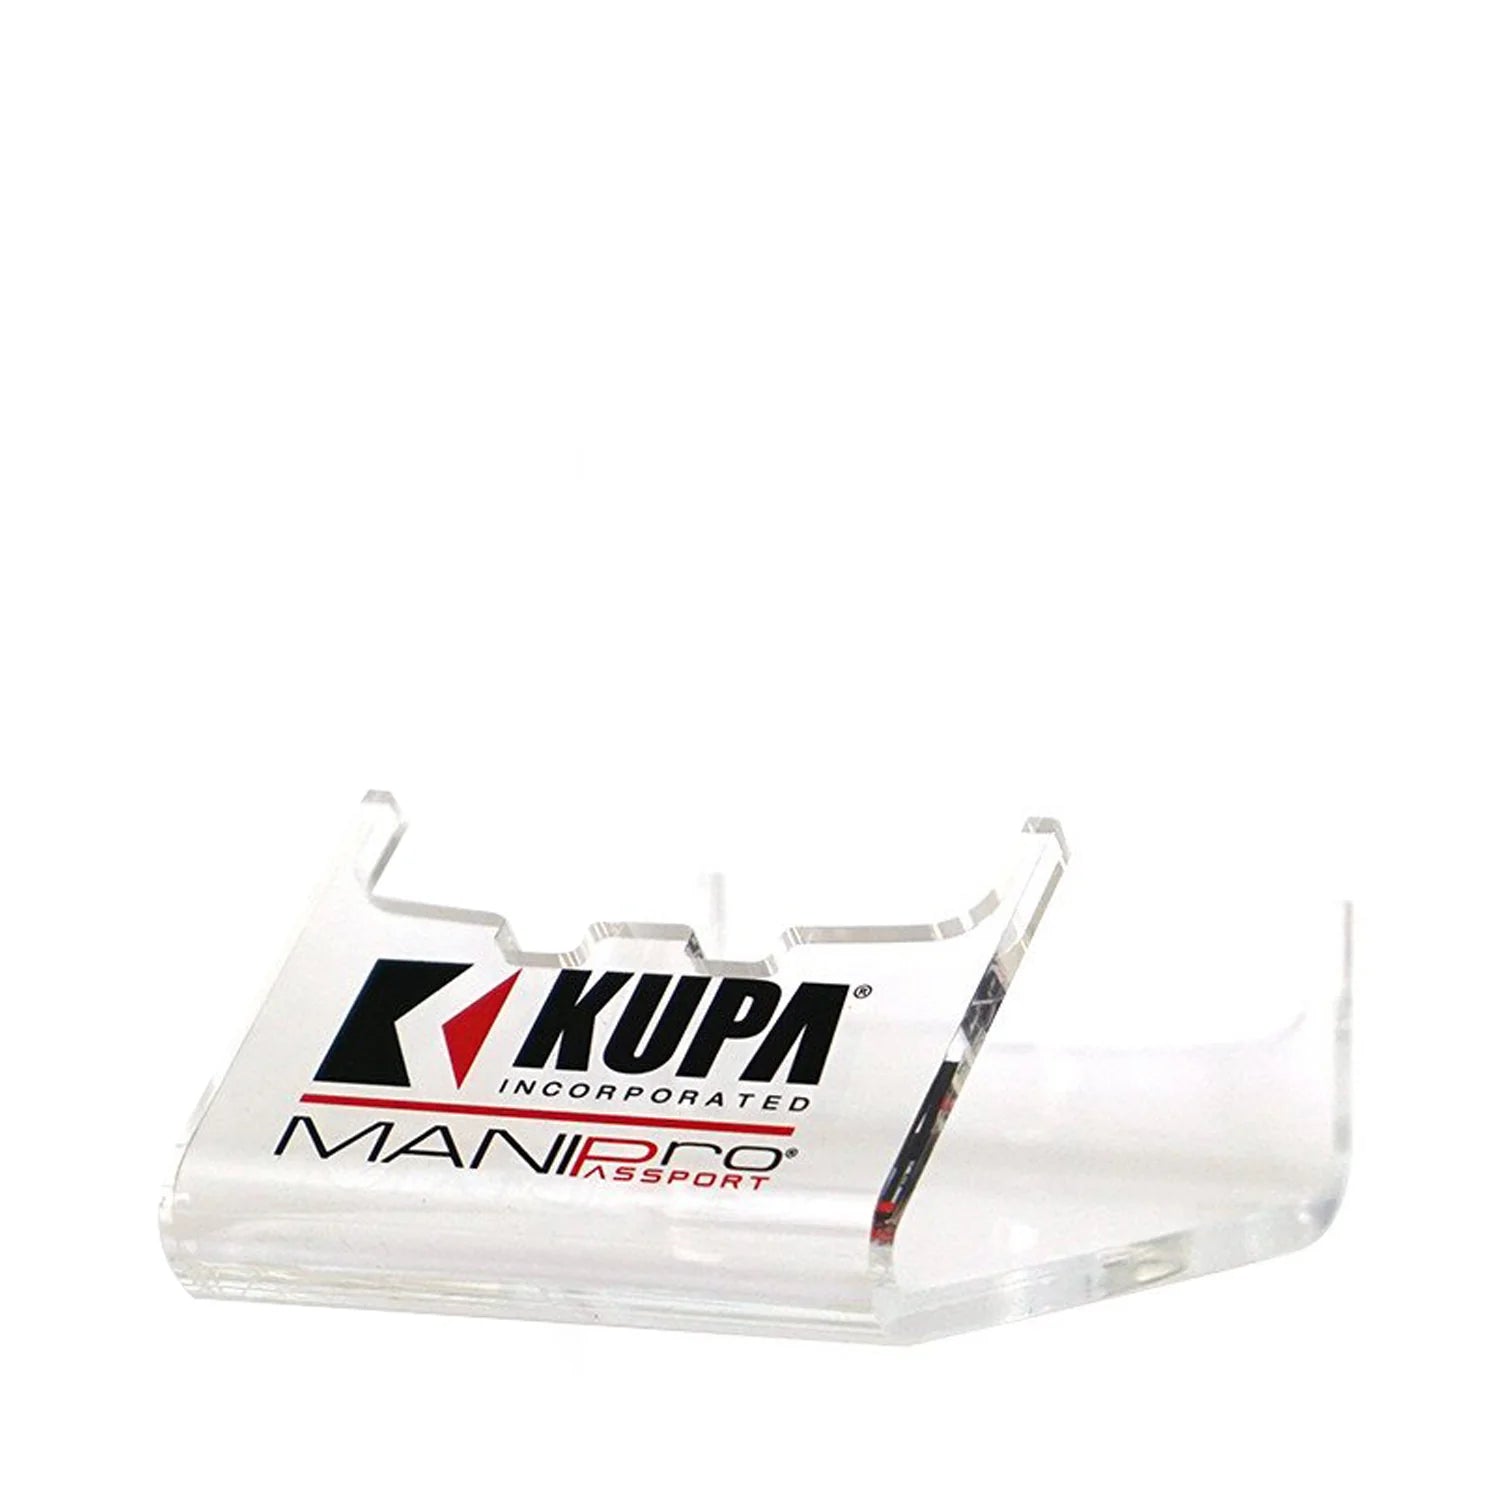 Kupa - MANIPro Passport Control Box Rose - Creata Beauty - Professional Beauty Products